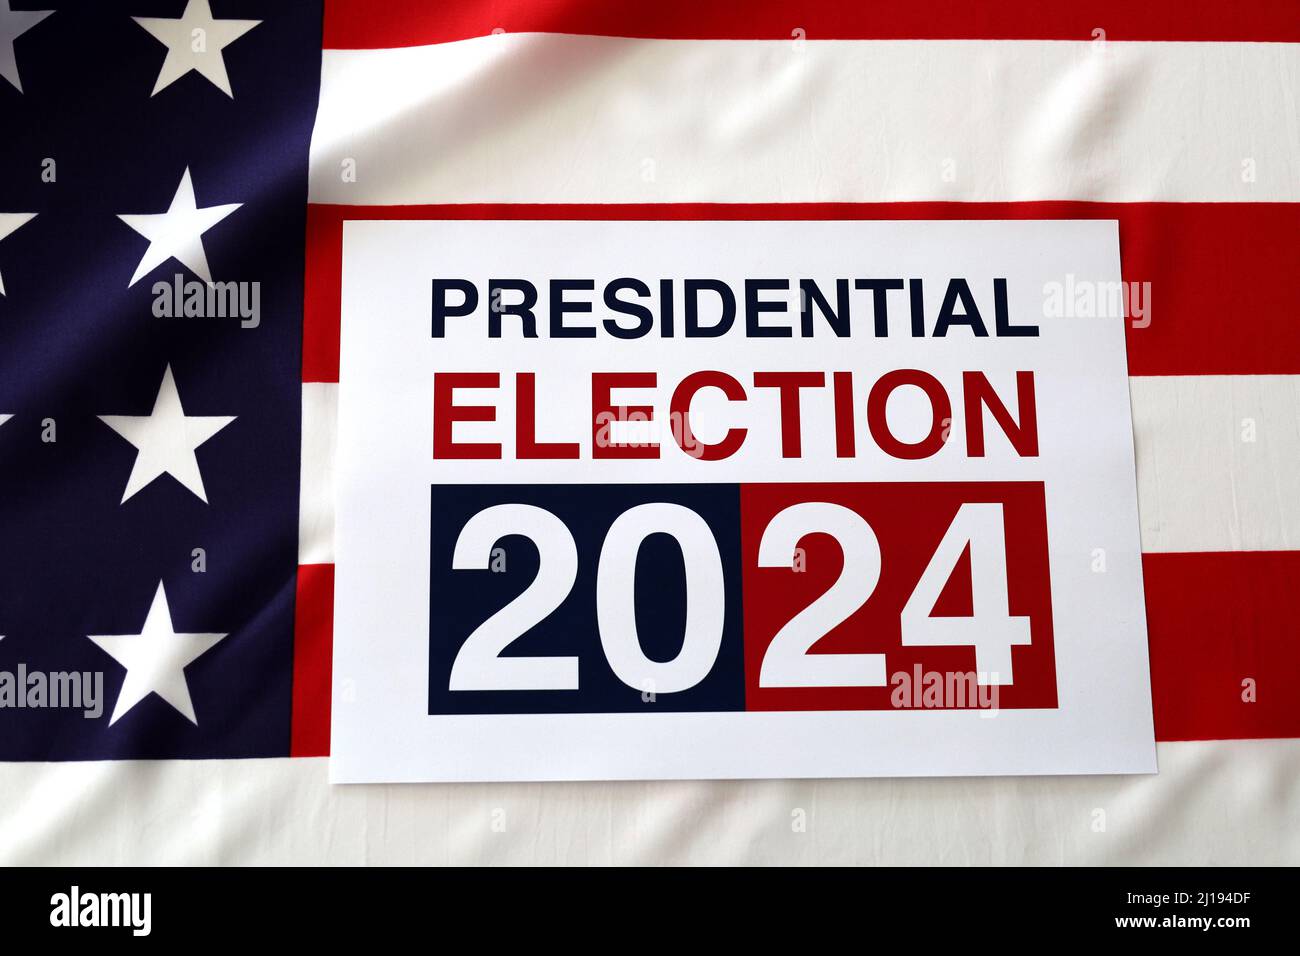 L'élection présidentielle de 2024 a fait l'objet d'un message sur le drapeau américain Banque D'Images